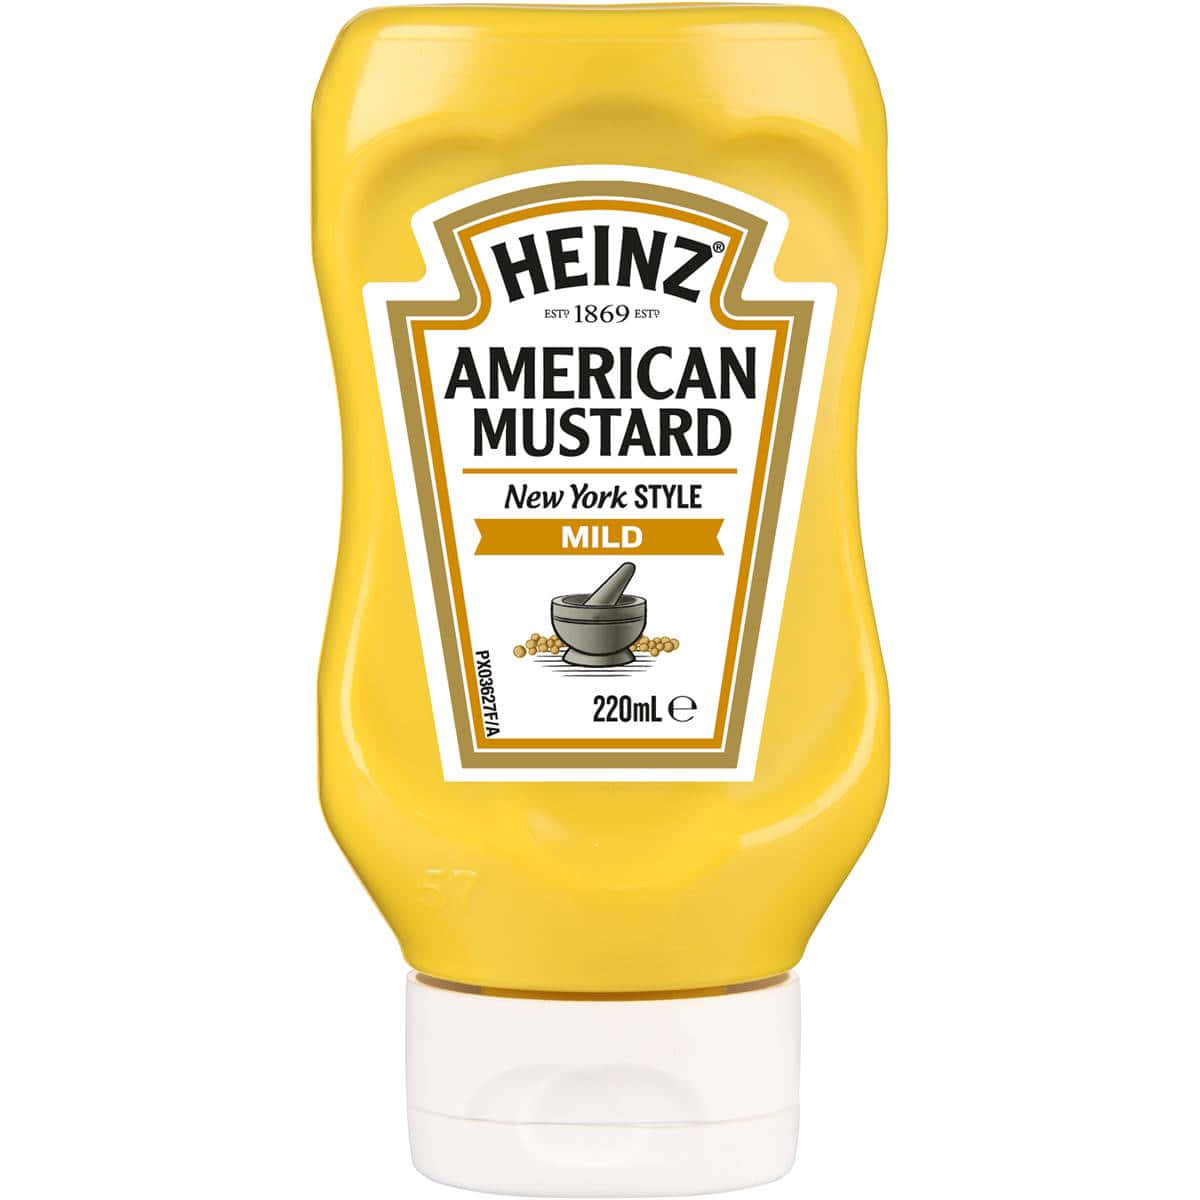 Heinz American Mustard Bottle Wallpaper